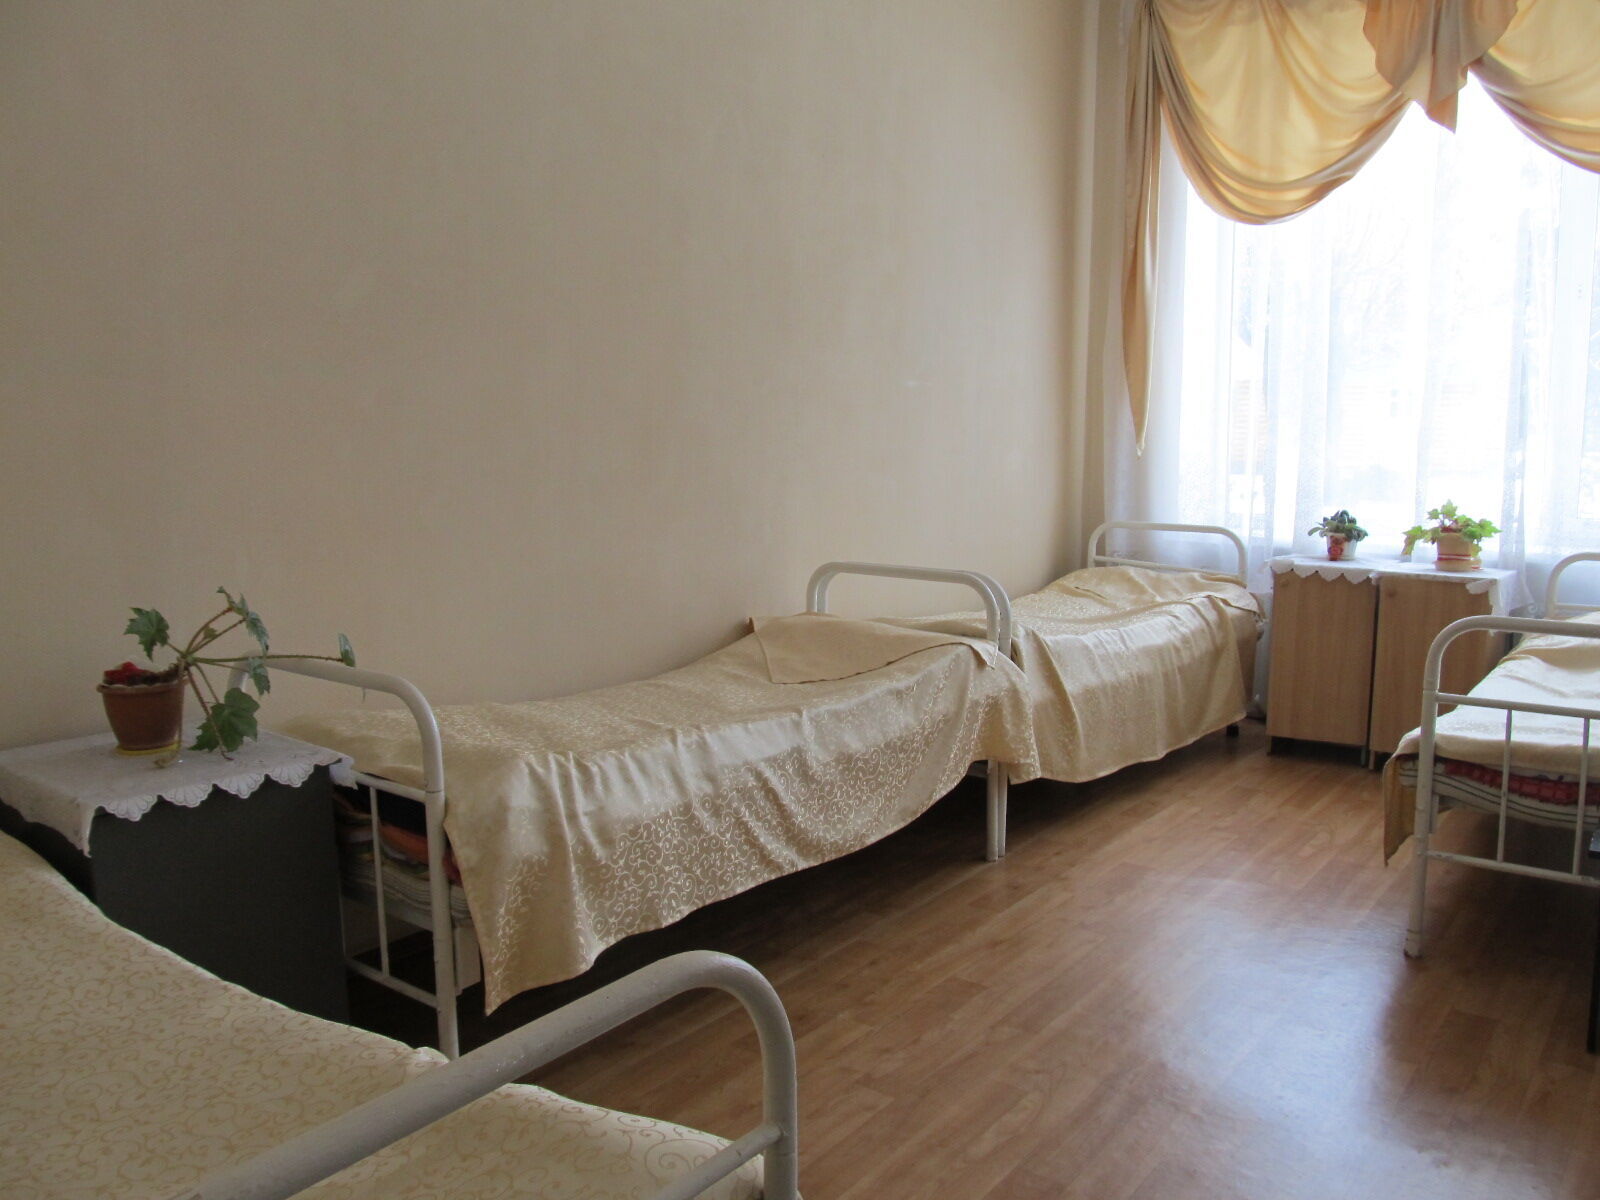 Комната, где живет Елена Зайцева.